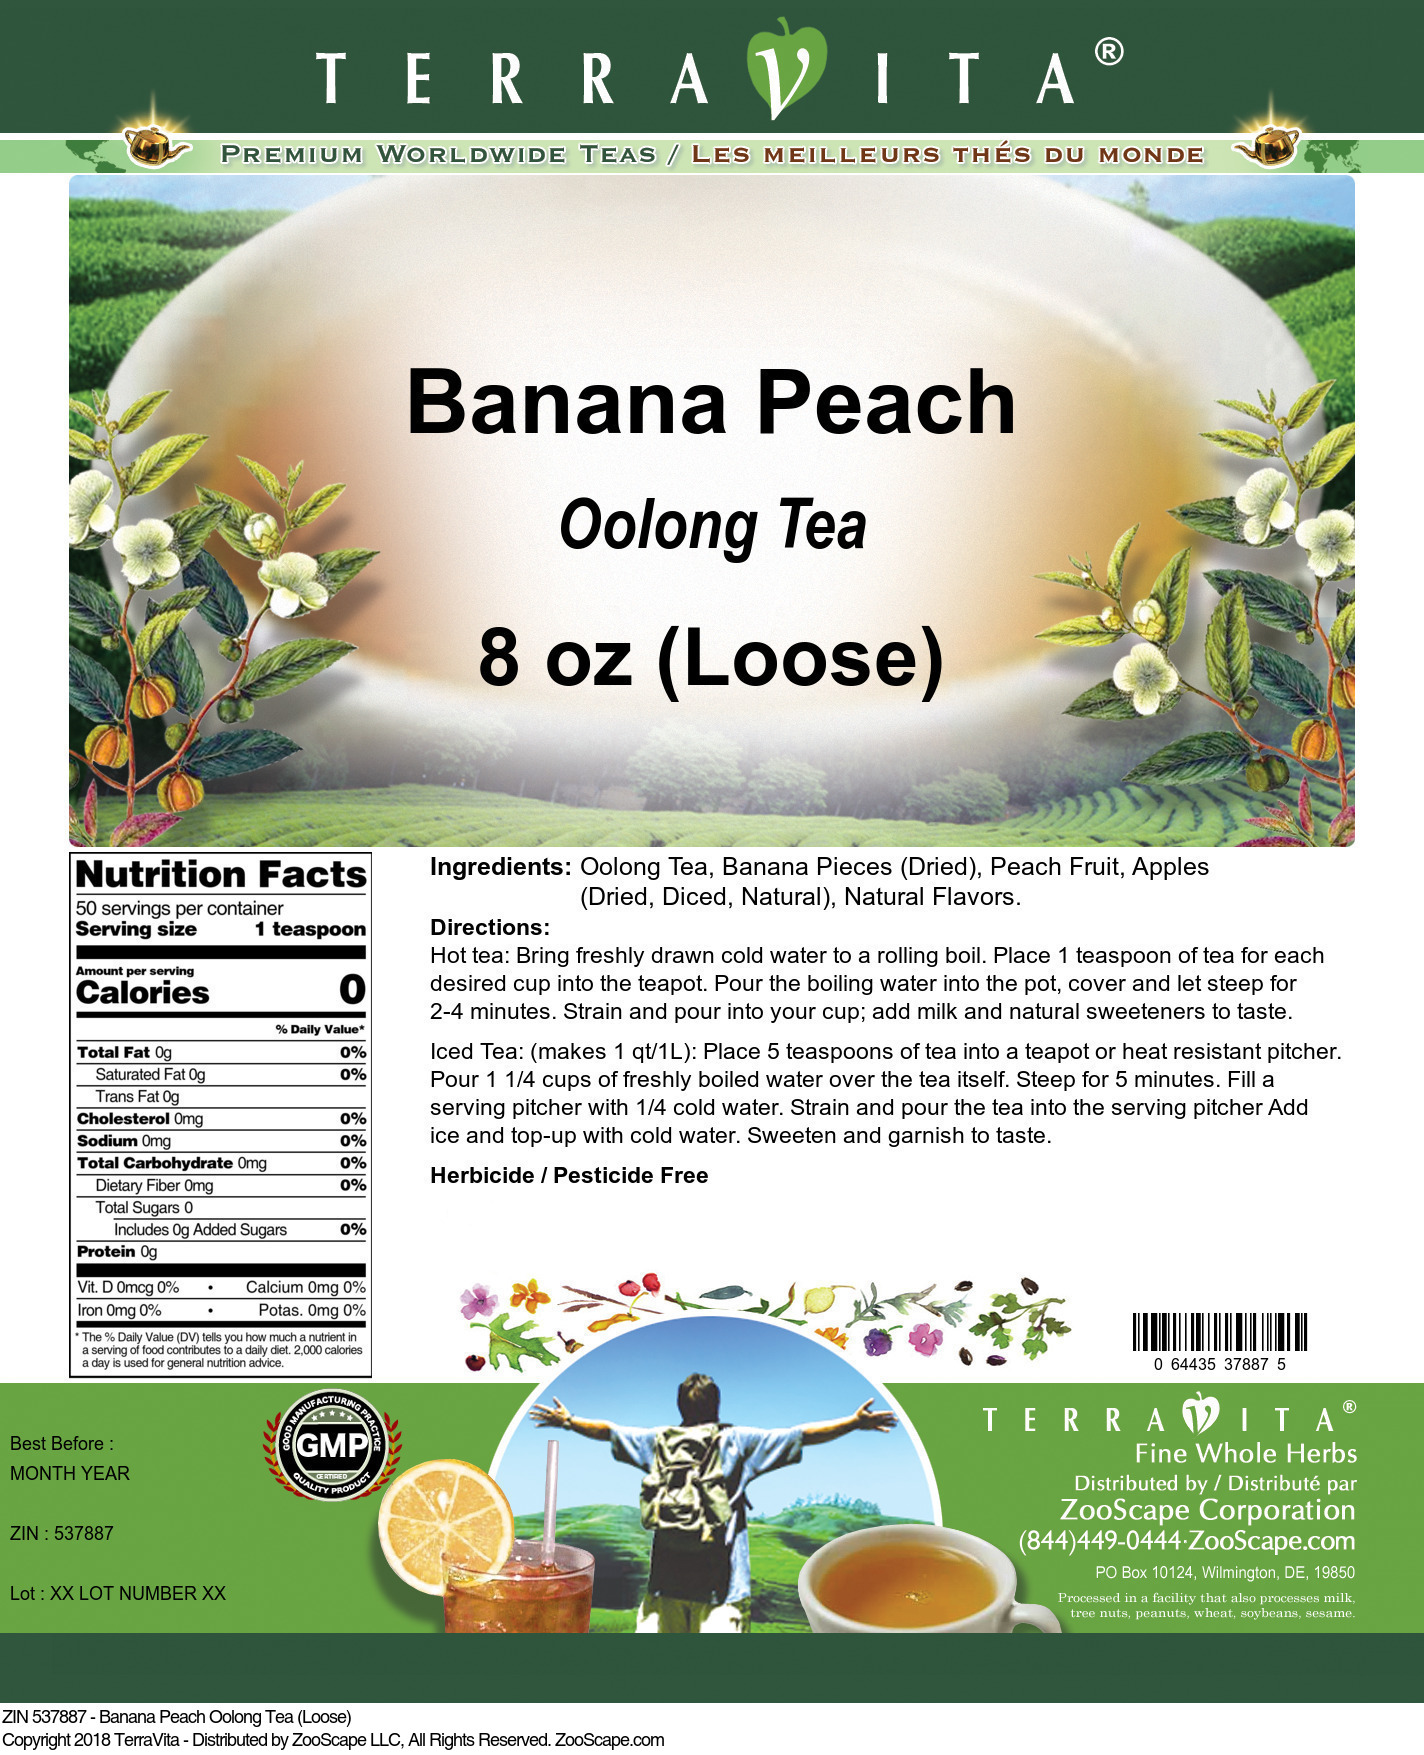 Banana Peach Oolong Tea (Loose) - Label